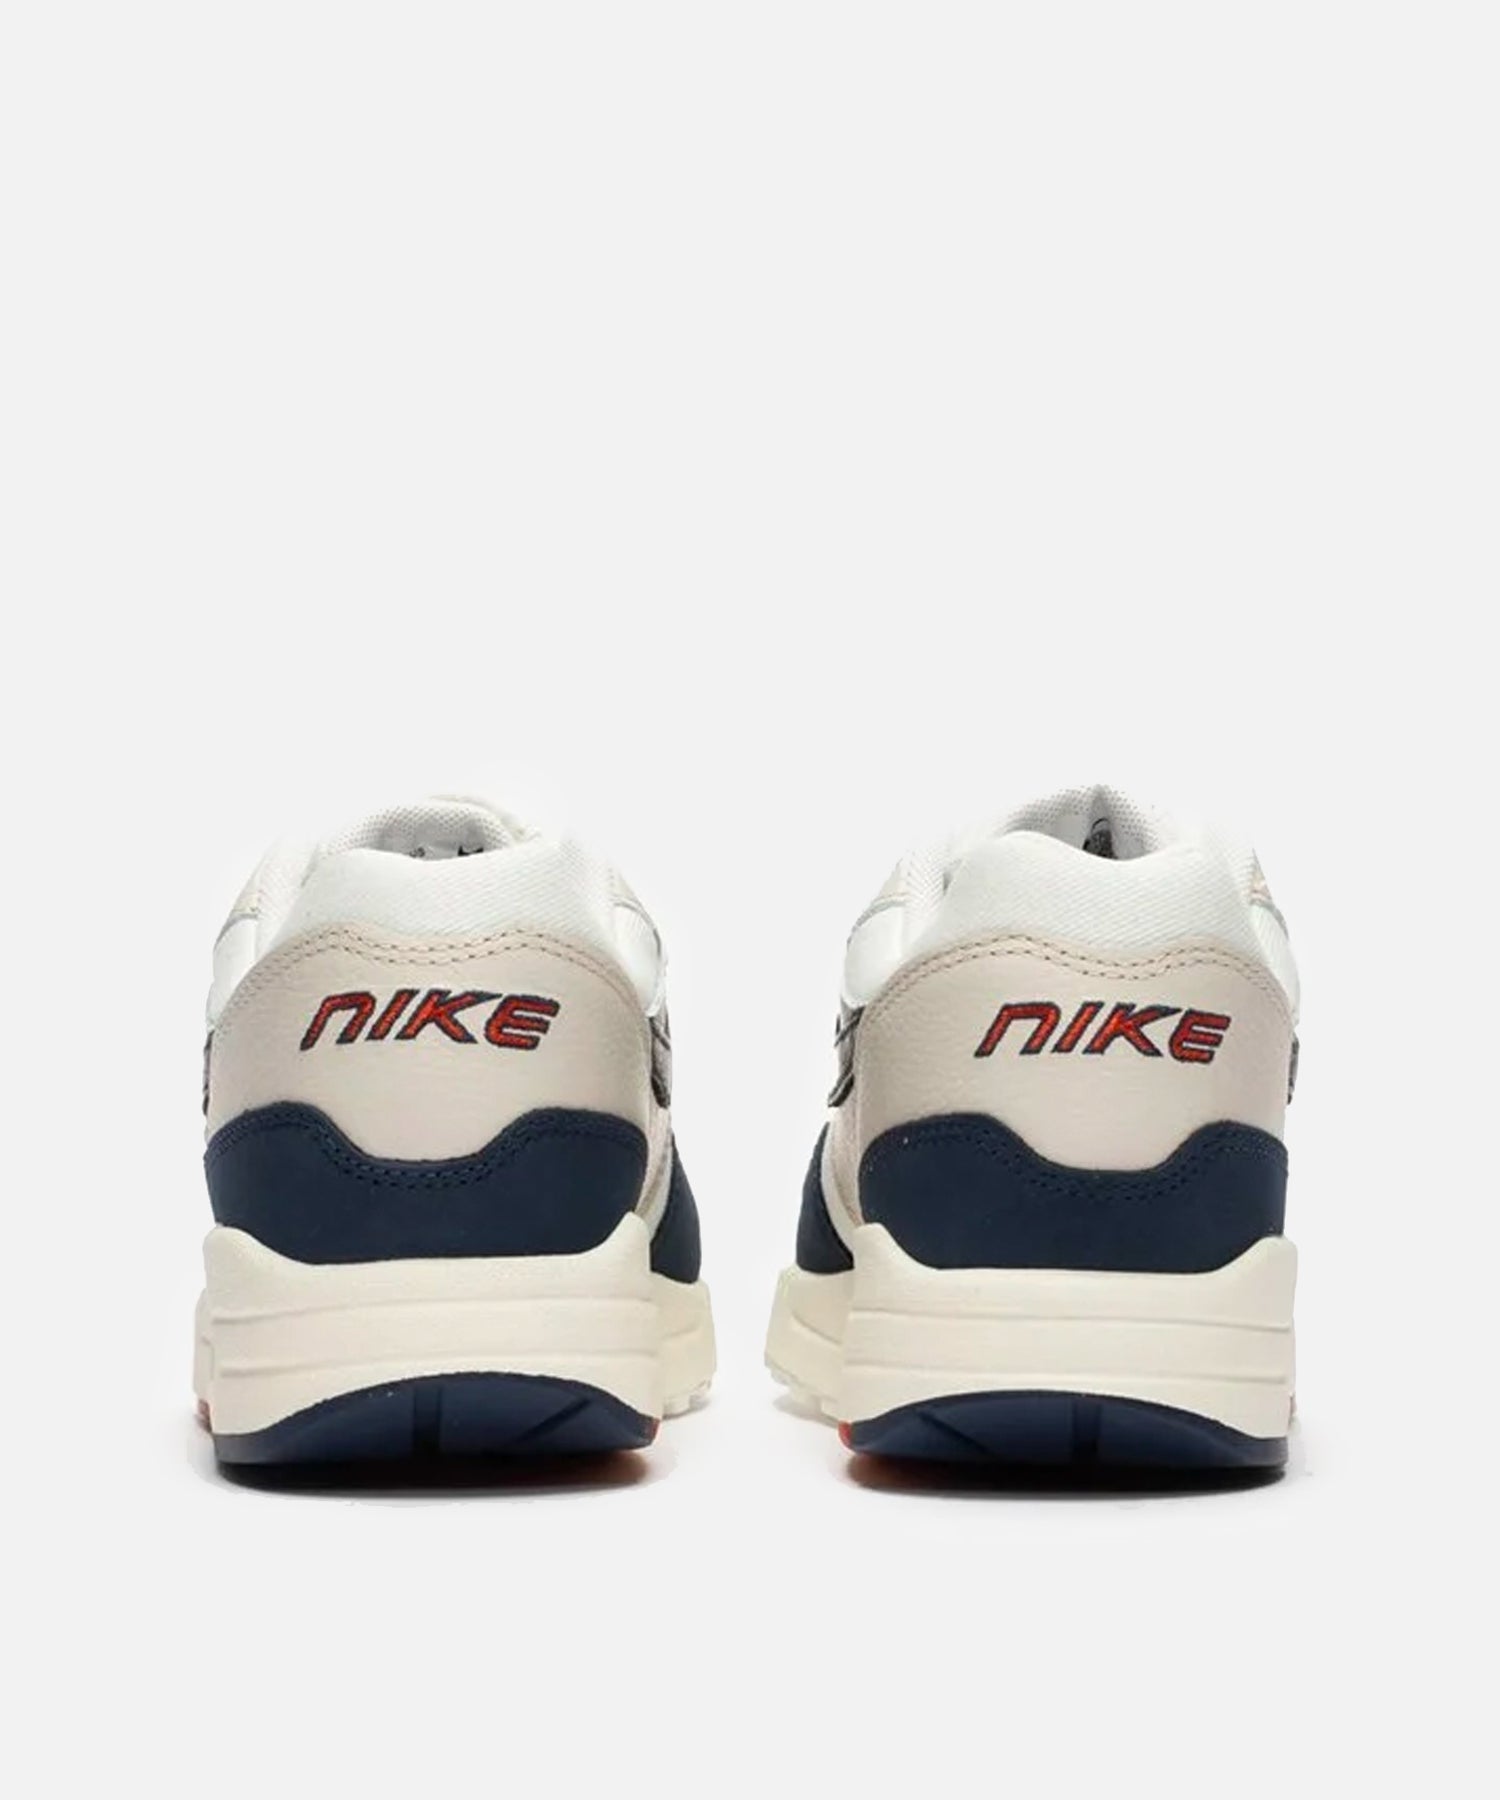 Nike WMNS Air Max 1 LX (LT Orewood BRN/Sail-Obsidian)